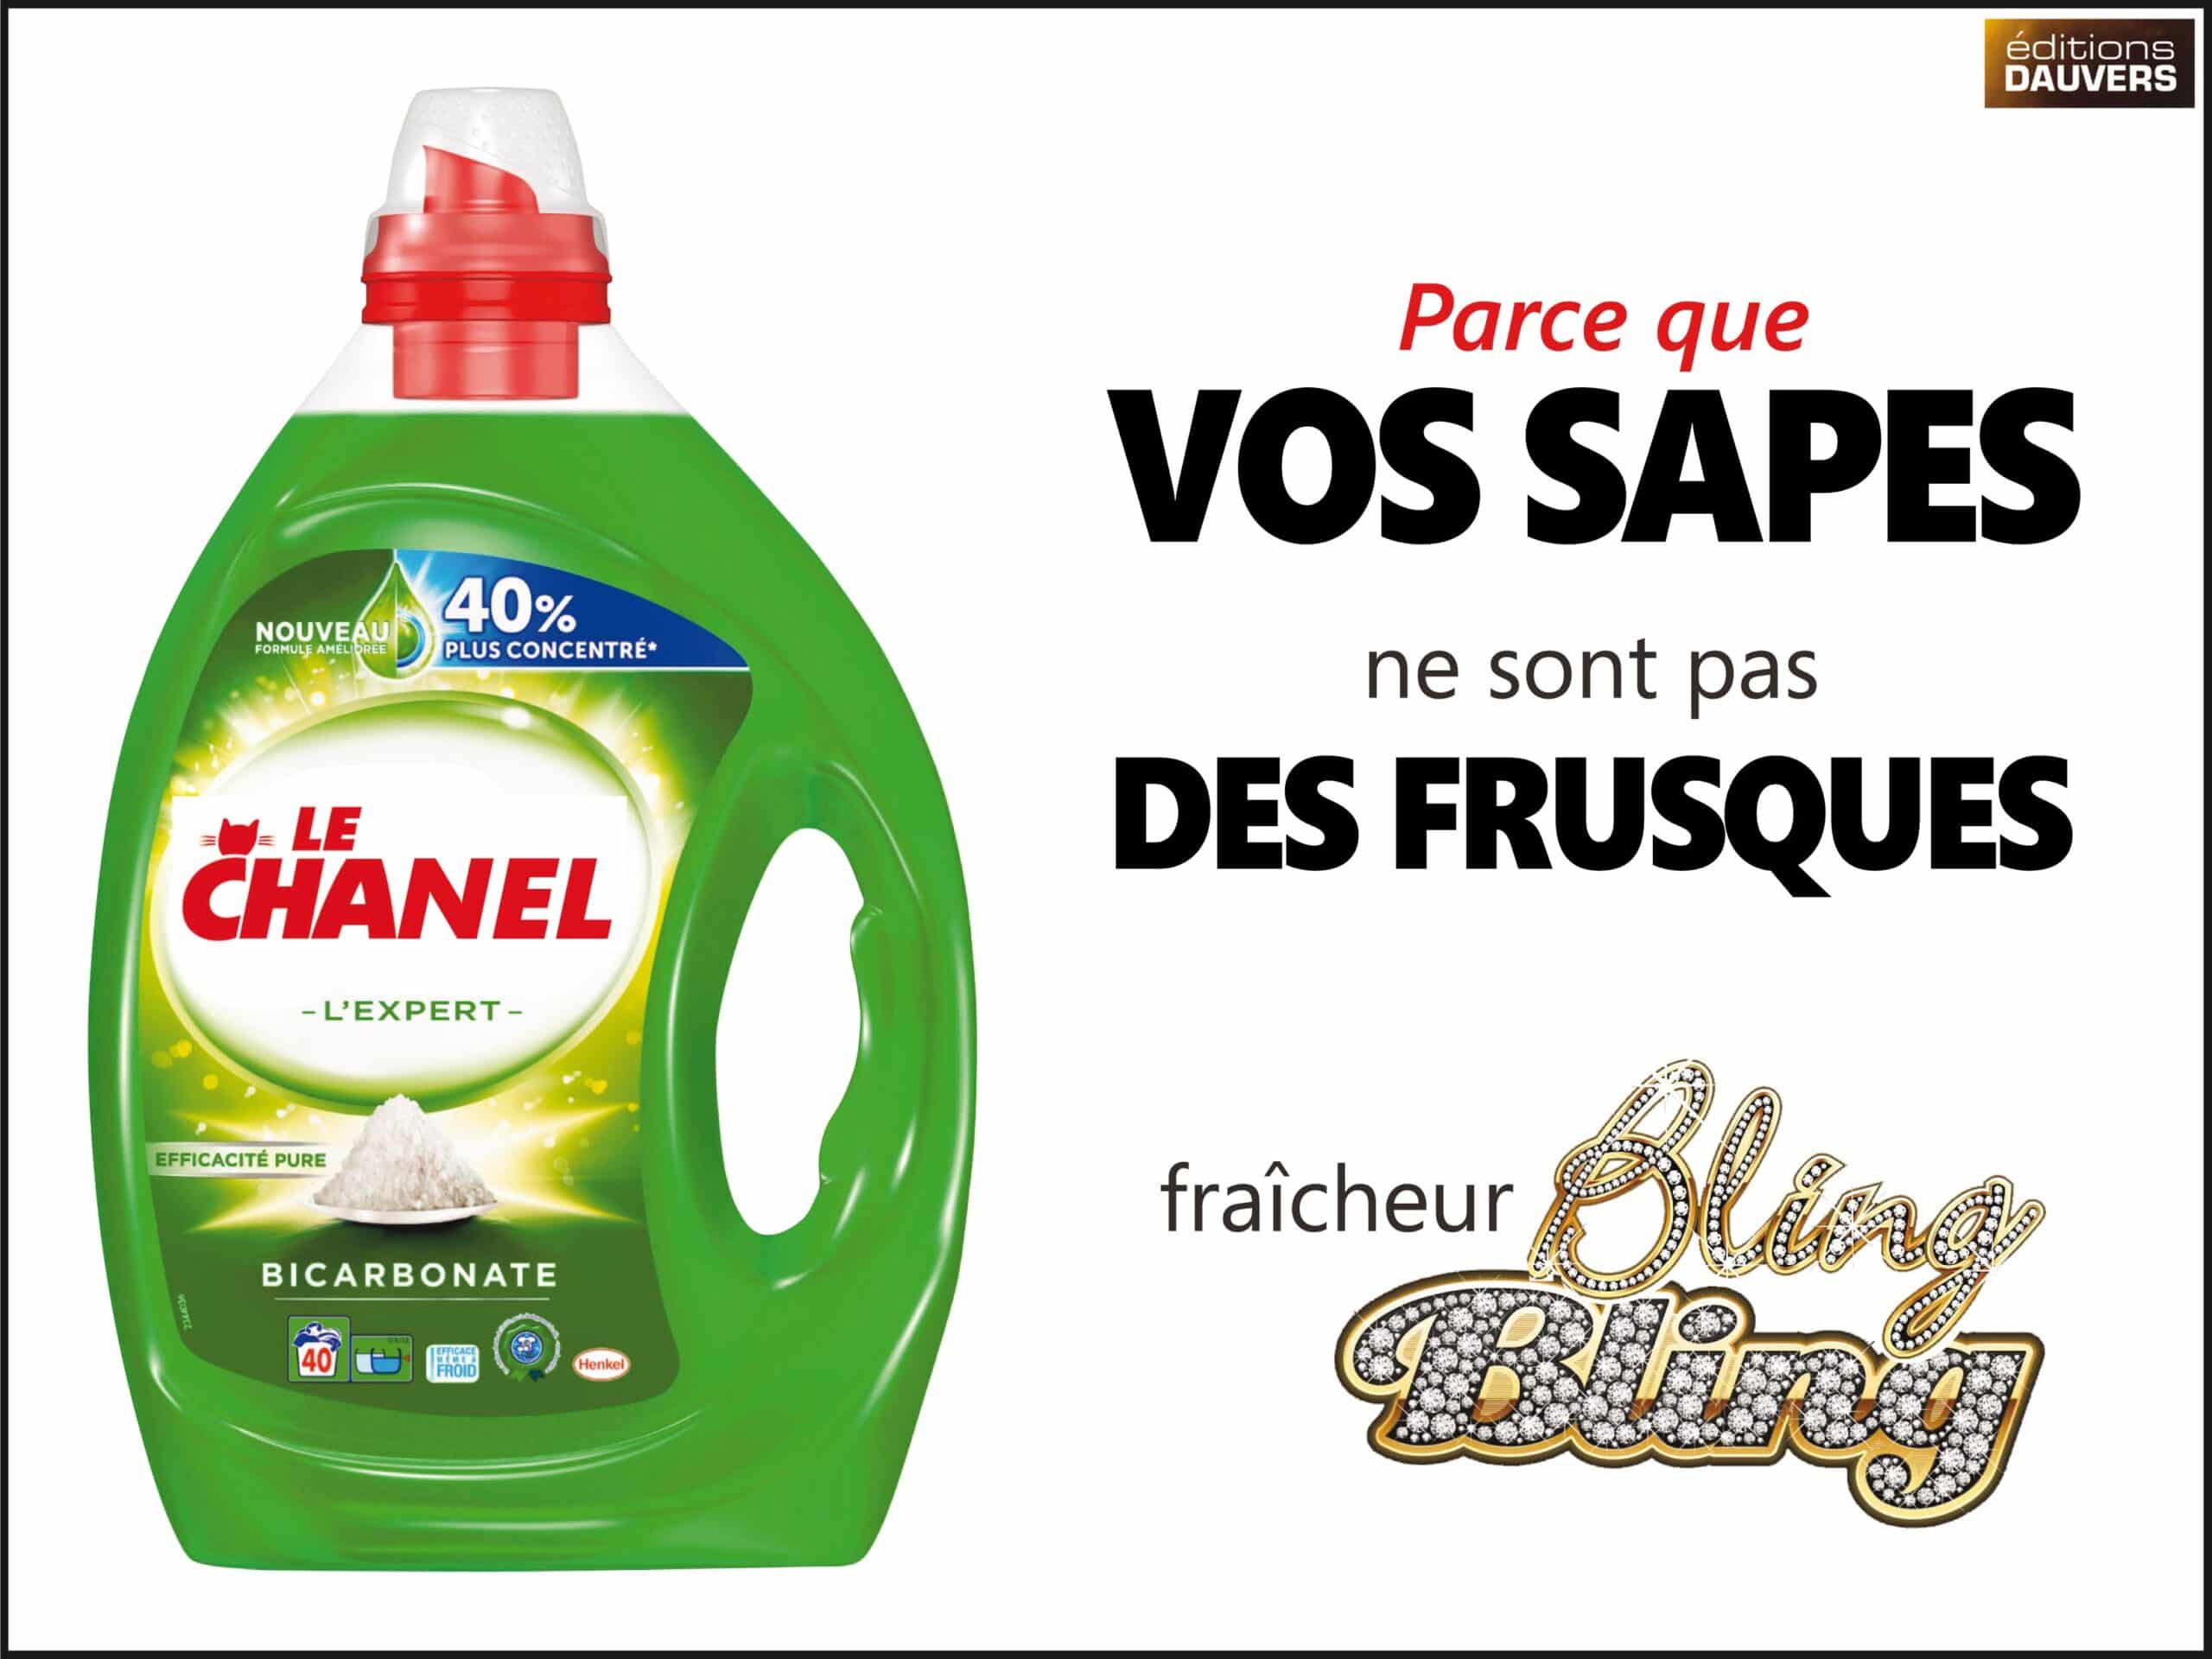 Lessive liquide Le Chat l'Expert bicarbonate (Le chat, 1,89L)